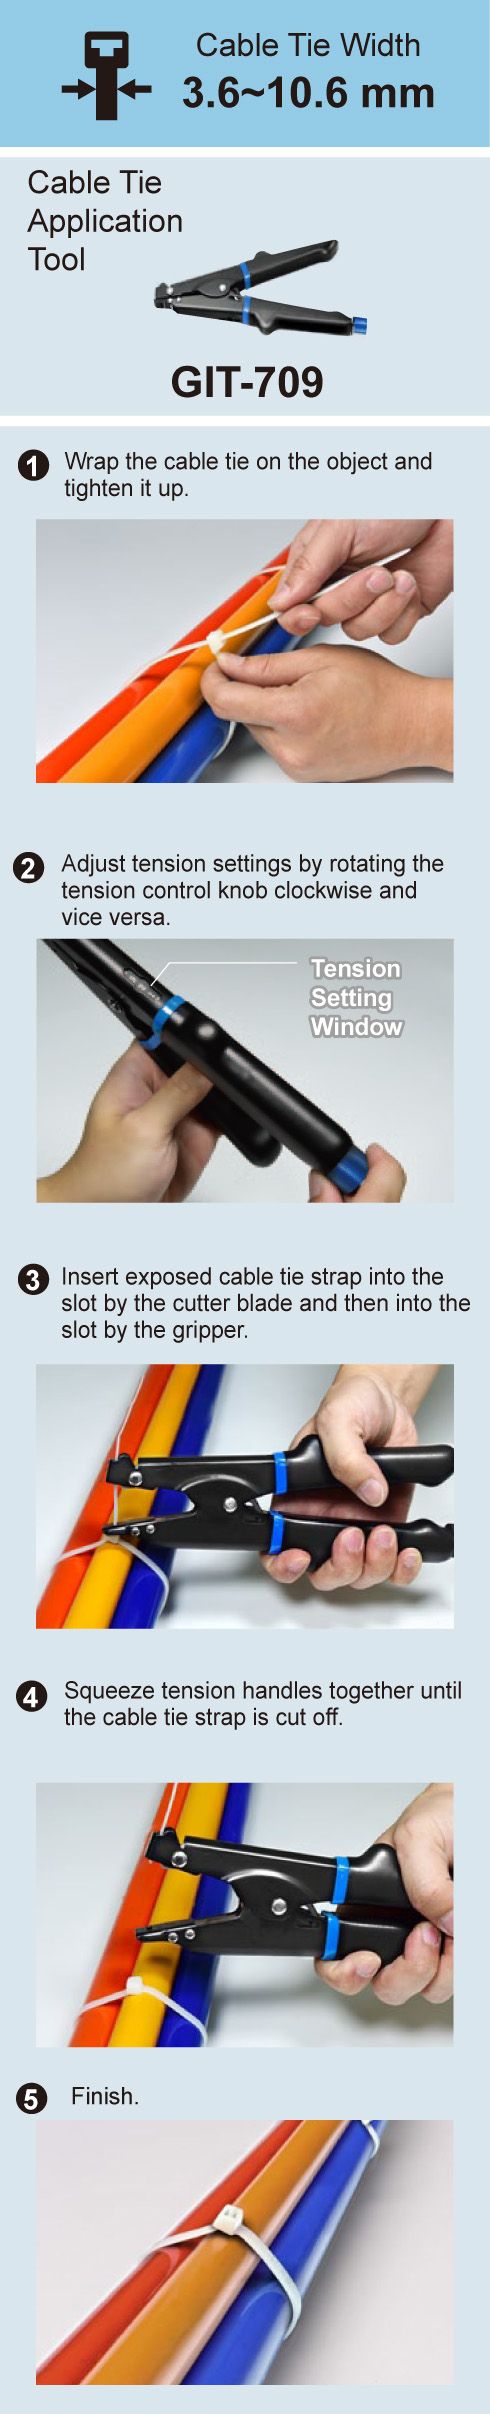 Gebruiksaanwijzing van Plastic Kabelbinders met GIT-709